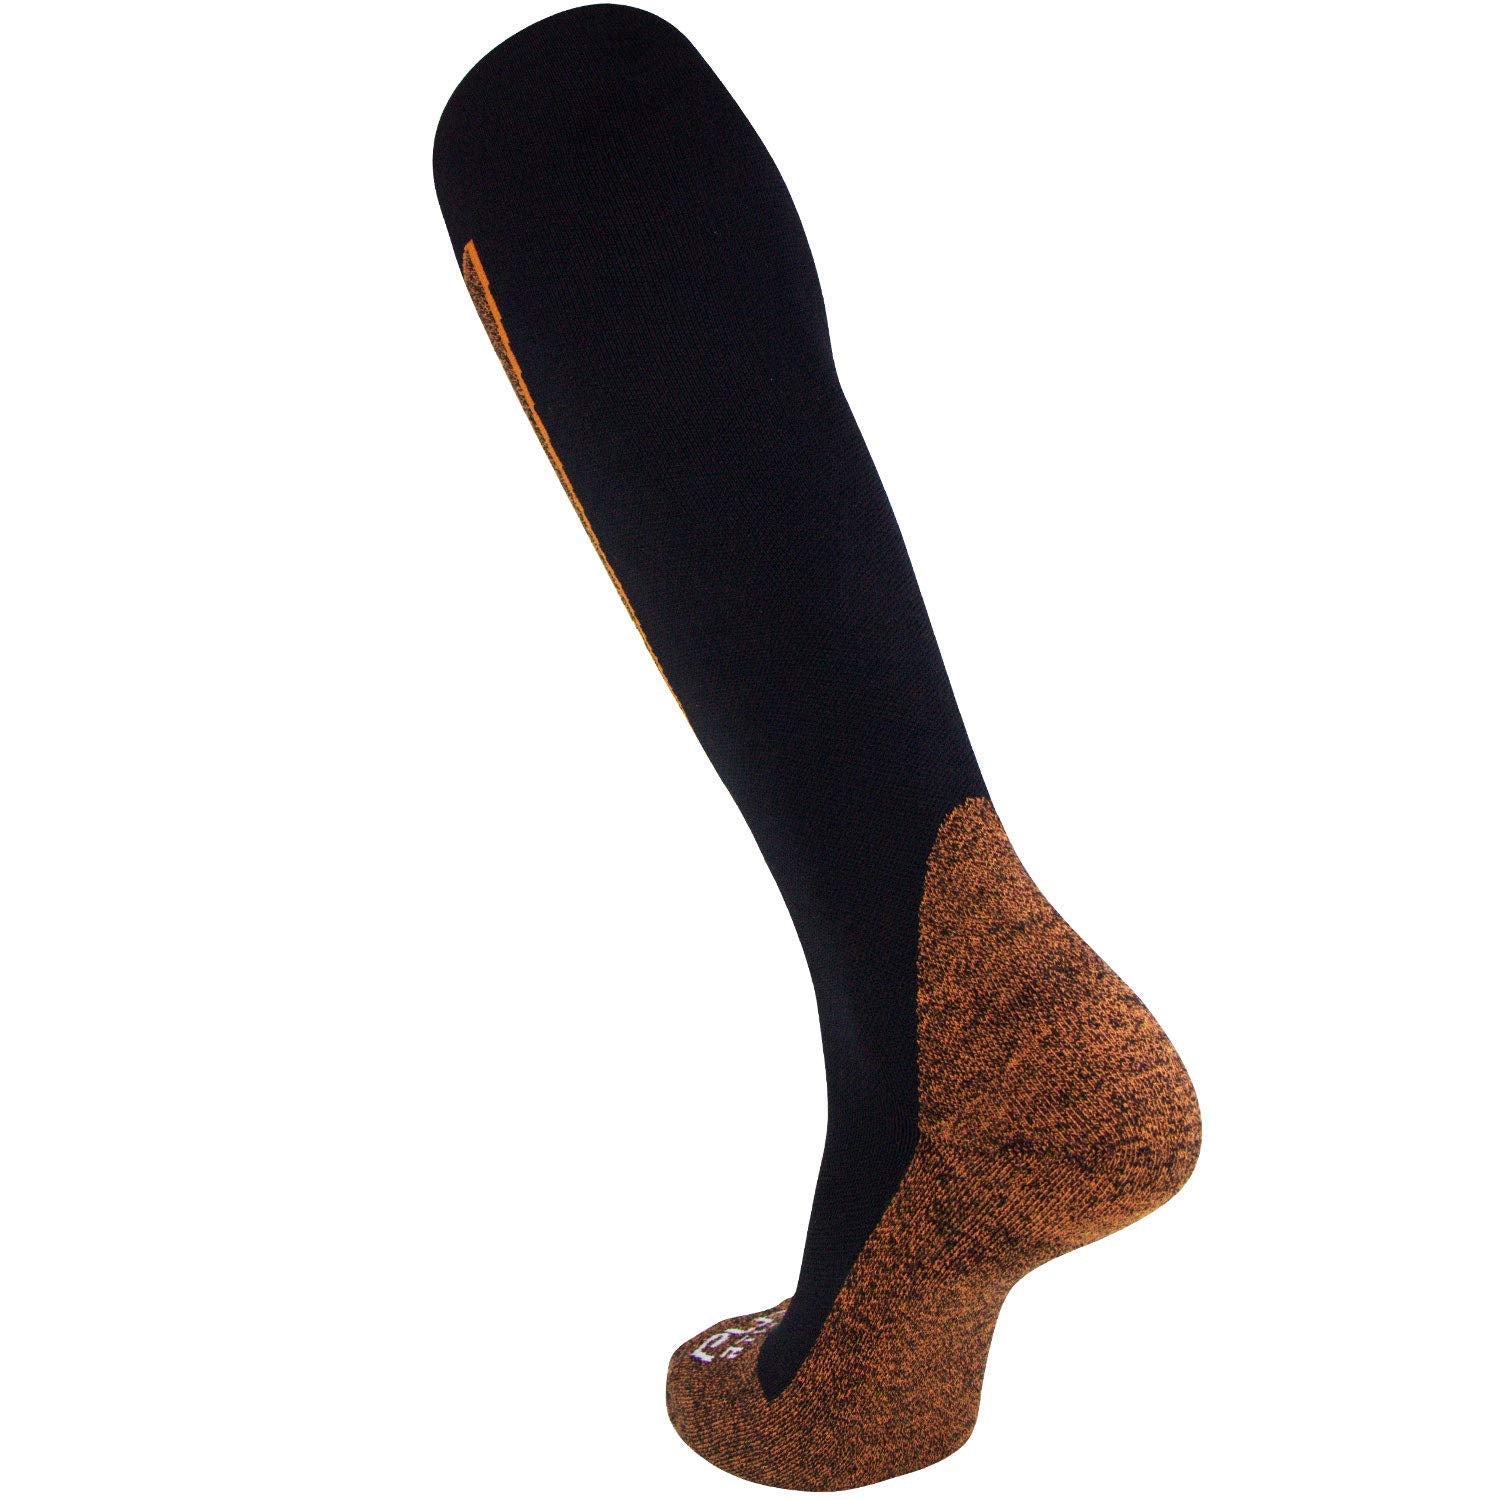 Copper Compression Ski Socks - Pure Athlete